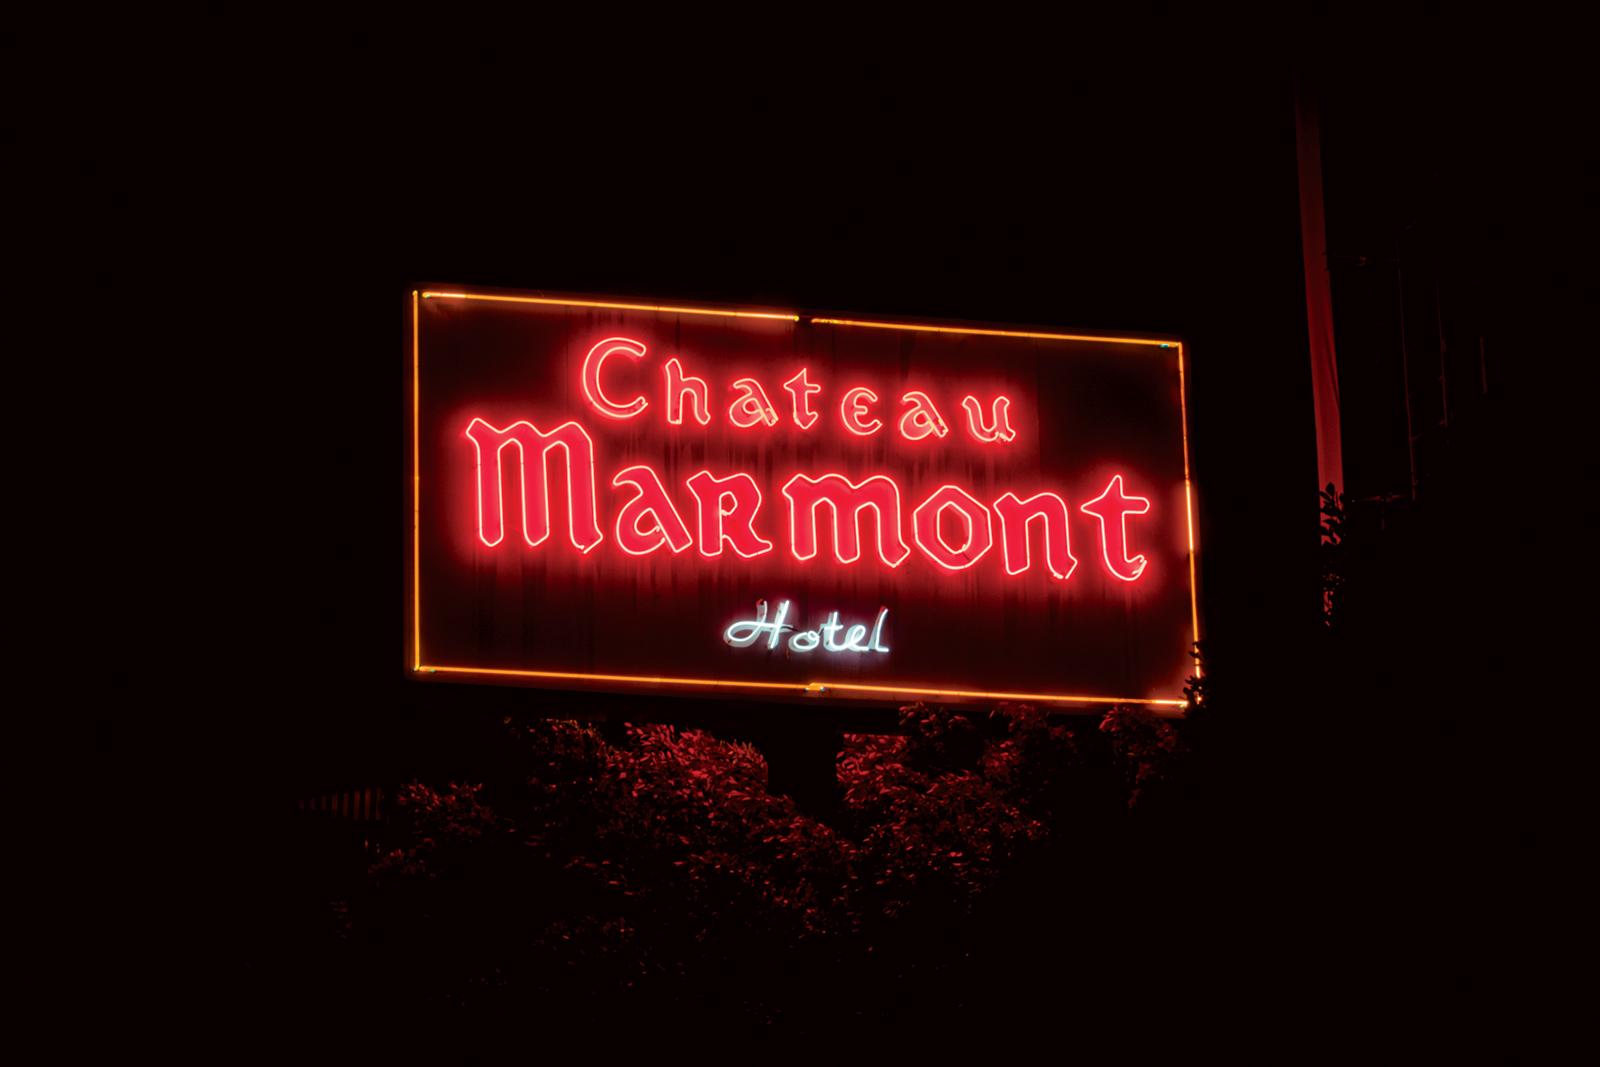 "Chateau Marmont" Fotografie 30" x 40" Zoll Edition von 5 by Oleg Char

Medium: Hahnemühle Barytpapier
Nicht gerahmt. Wird in einer Tube geliefert. 

Andere Größen verfügbar: 	
Auflage von 5:	30" x 40" Zoll
Auflage von 20 Stück:	14,5" x 20"